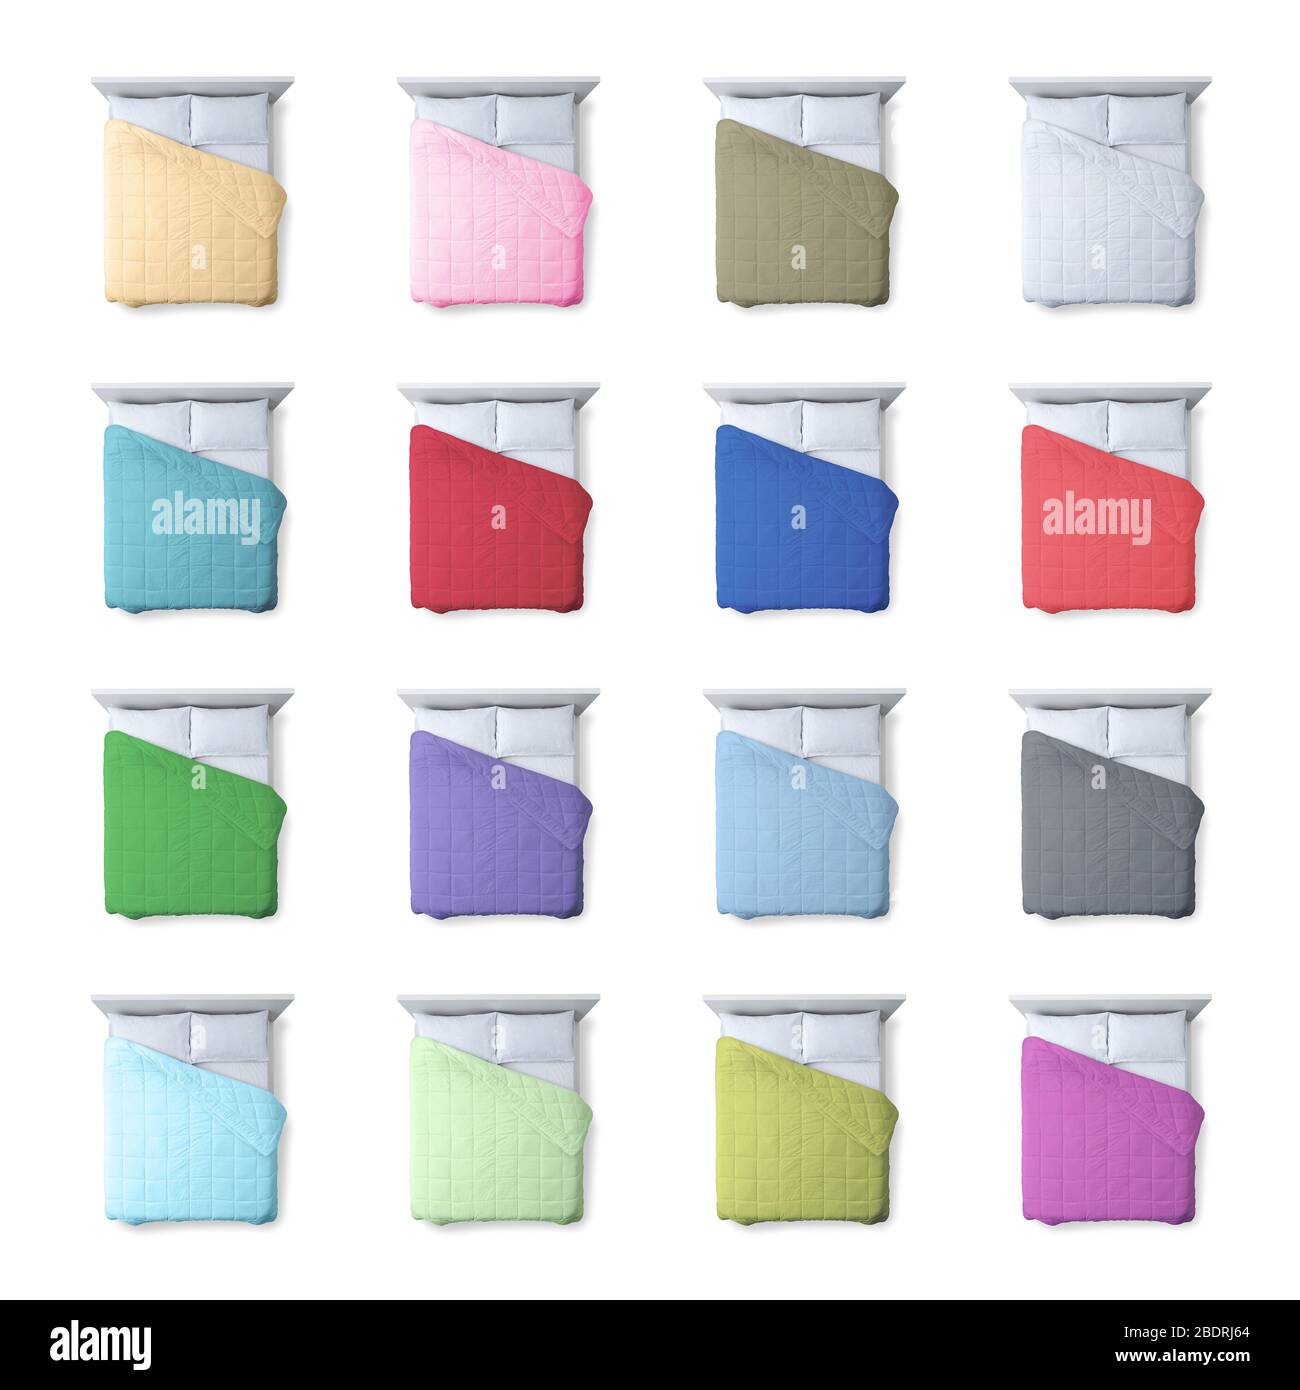 Sammlung von farbenfrohen Bettdecken und Betten auf weißem Hintergrund, Betten und Hausdekor Konzept, Draufsicht Stockfoto